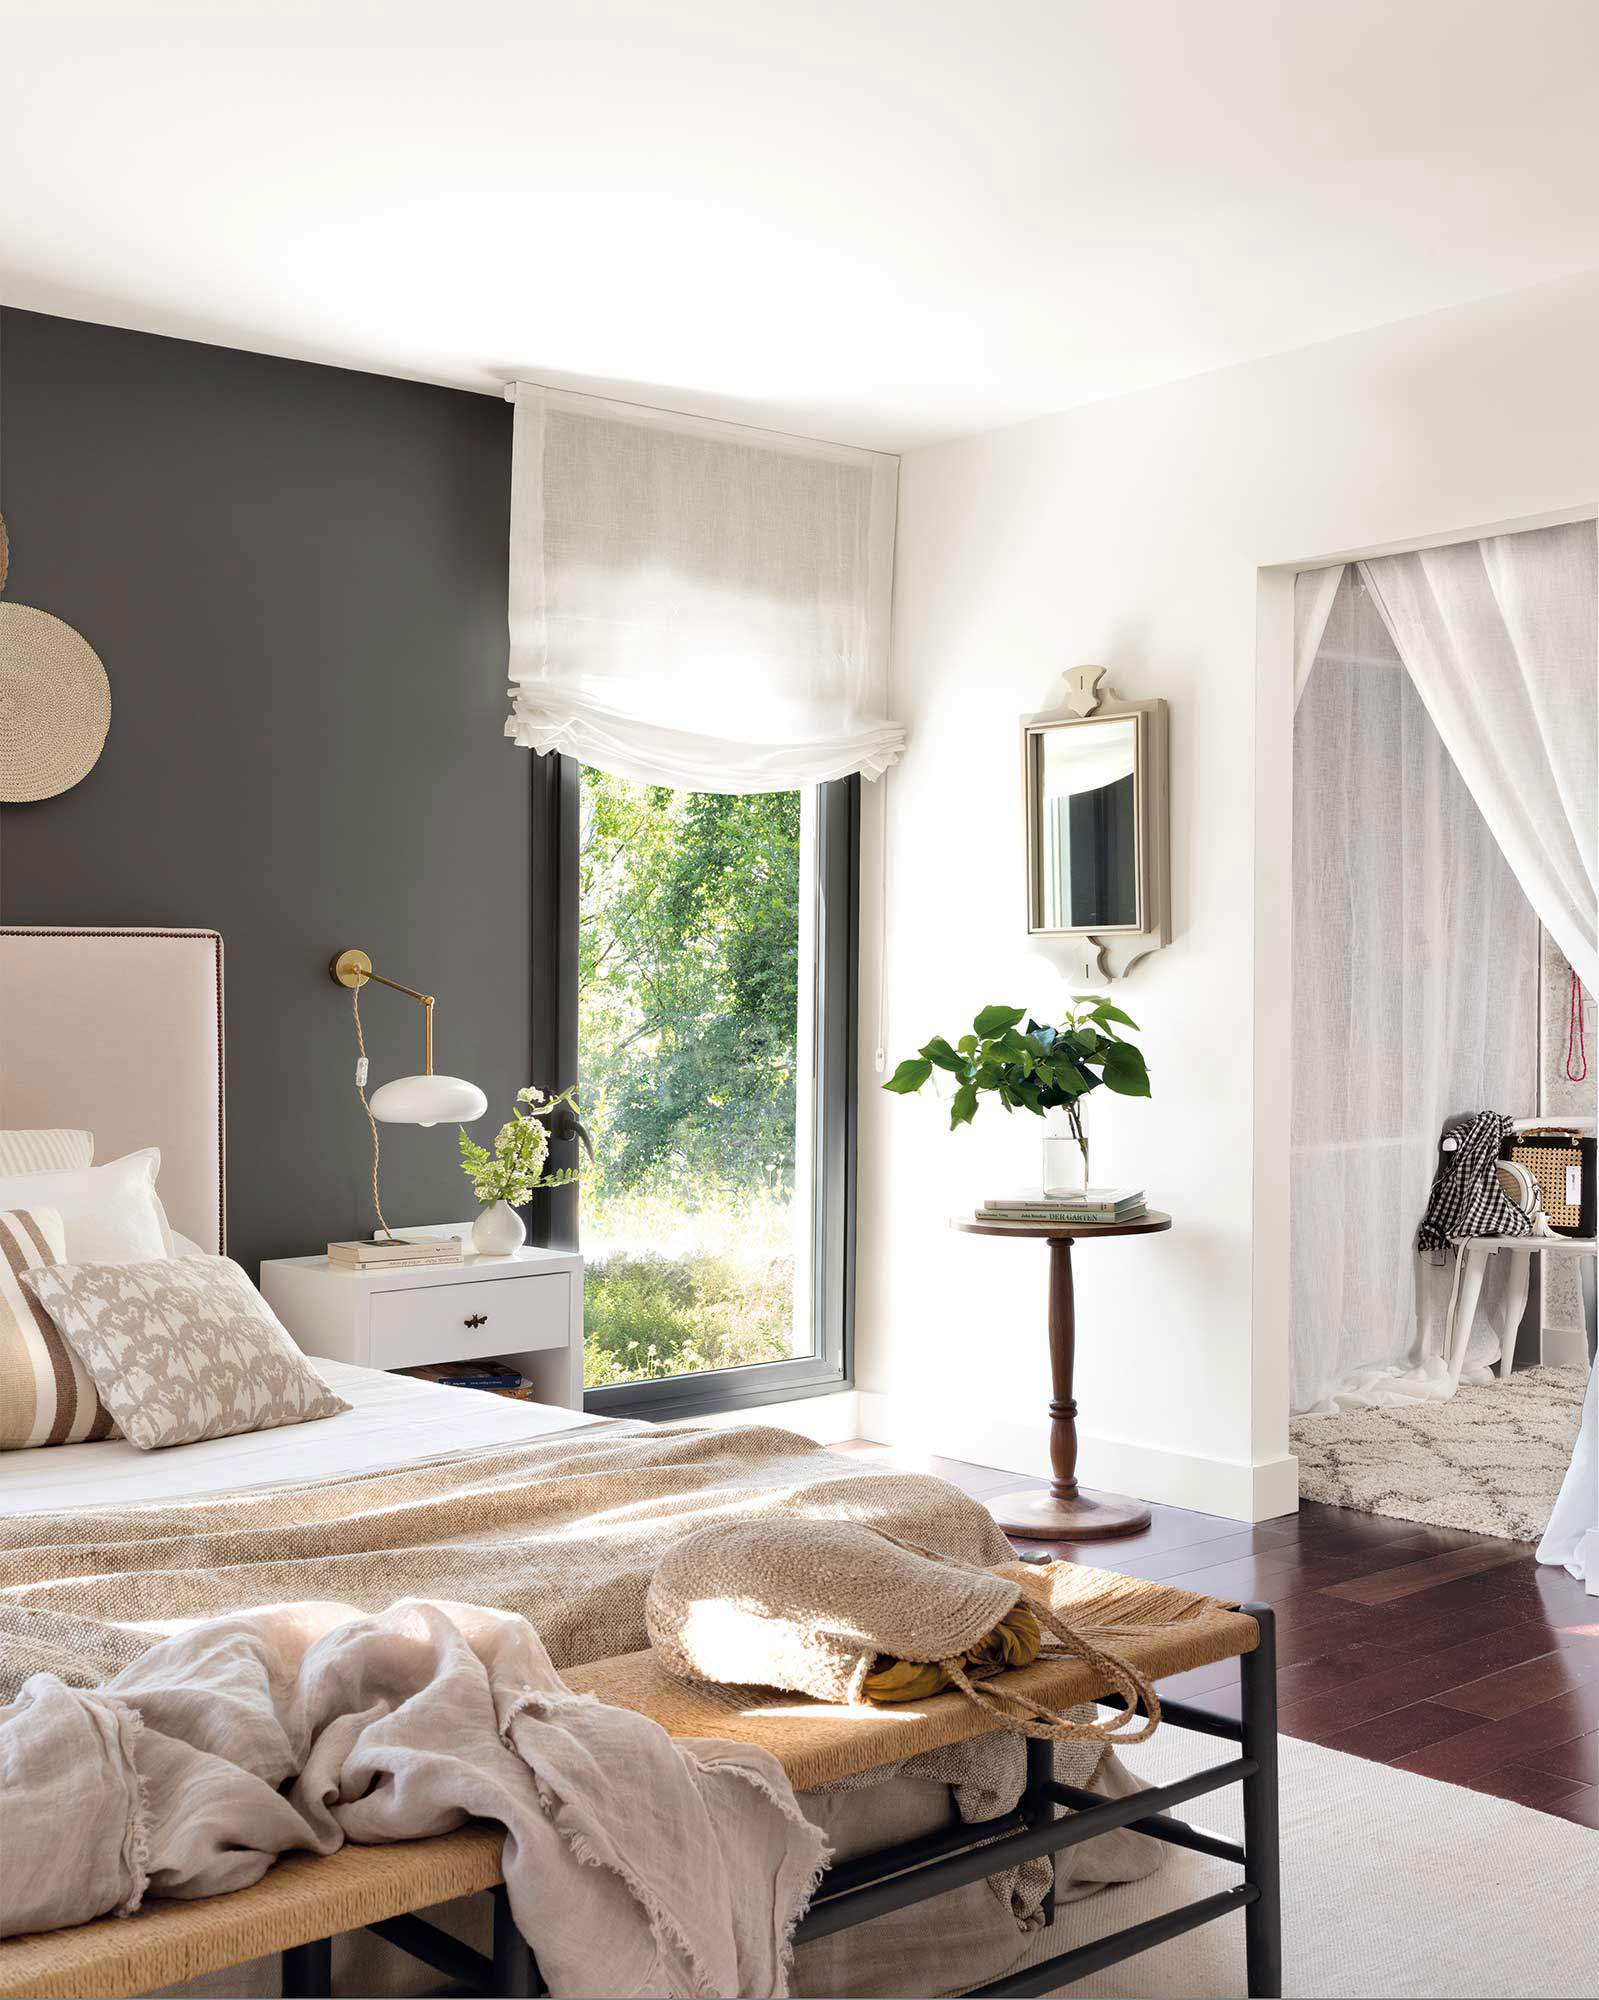 Dormitorio en tonos marrones claros de la casa de la interiorista Paula Duarte.